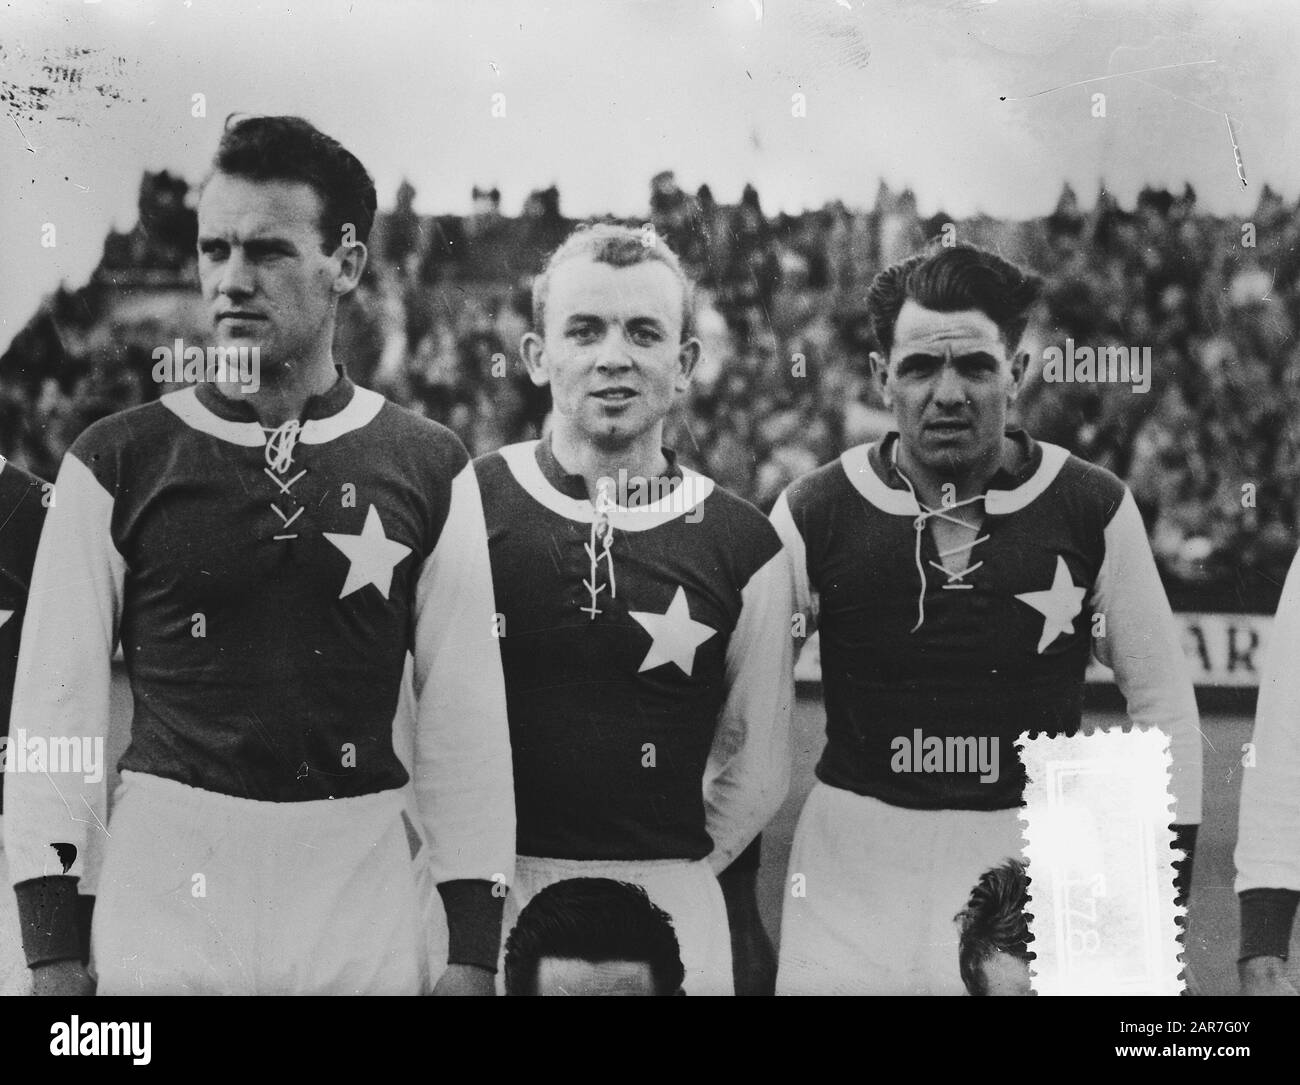 Van Wissen (MVV) Debütant Niederländisches Team Datum: 23. april 1957 Schlagwörter: Debütanten, Sport, Fußball Stockfoto